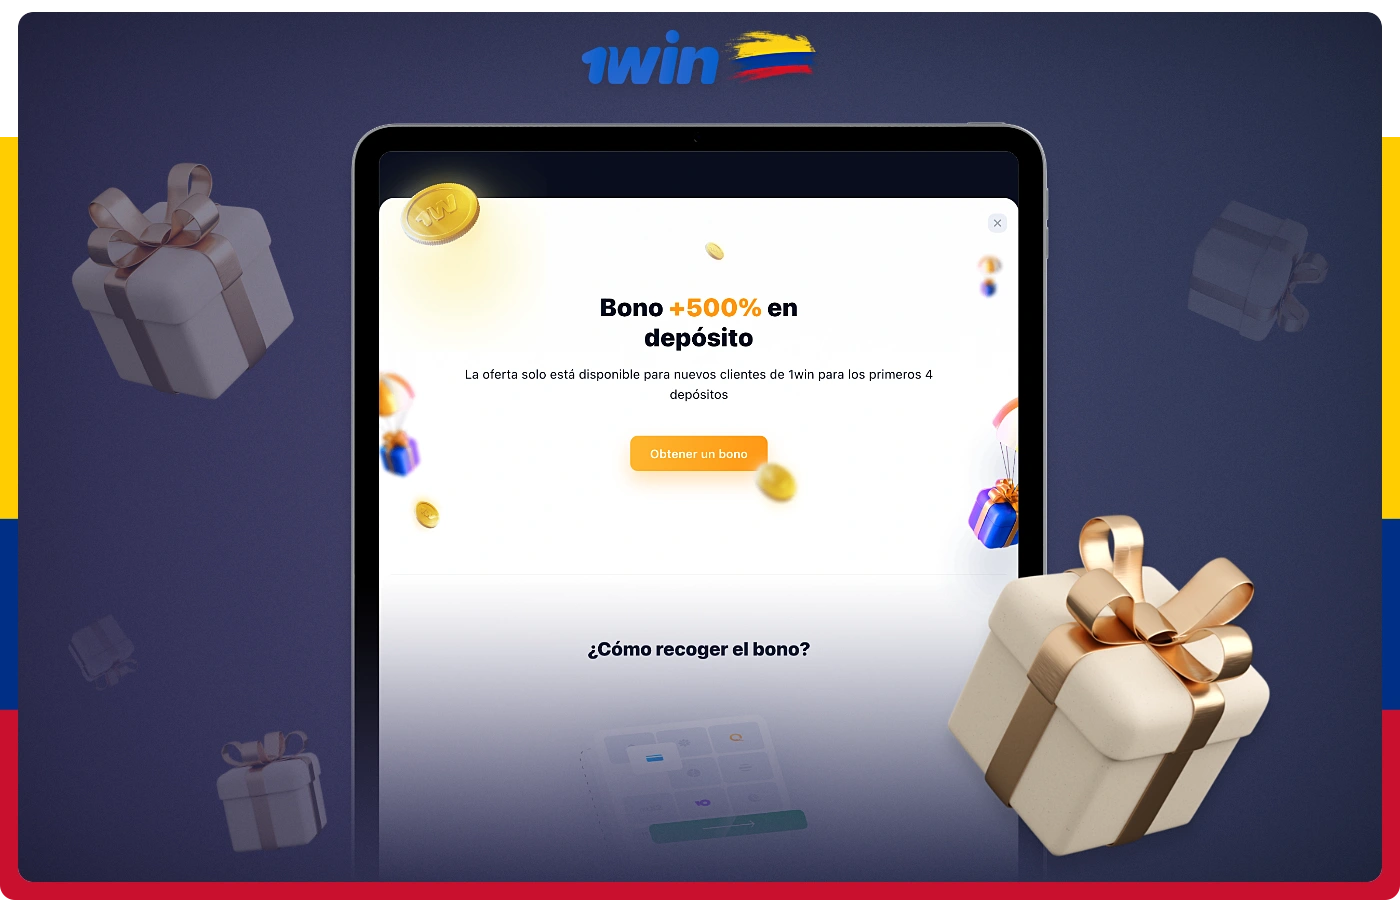 El generoso bono de bienvenida de 1win está dirigido a nuevos usuarios de Colombia que cumplan ciertas condiciones